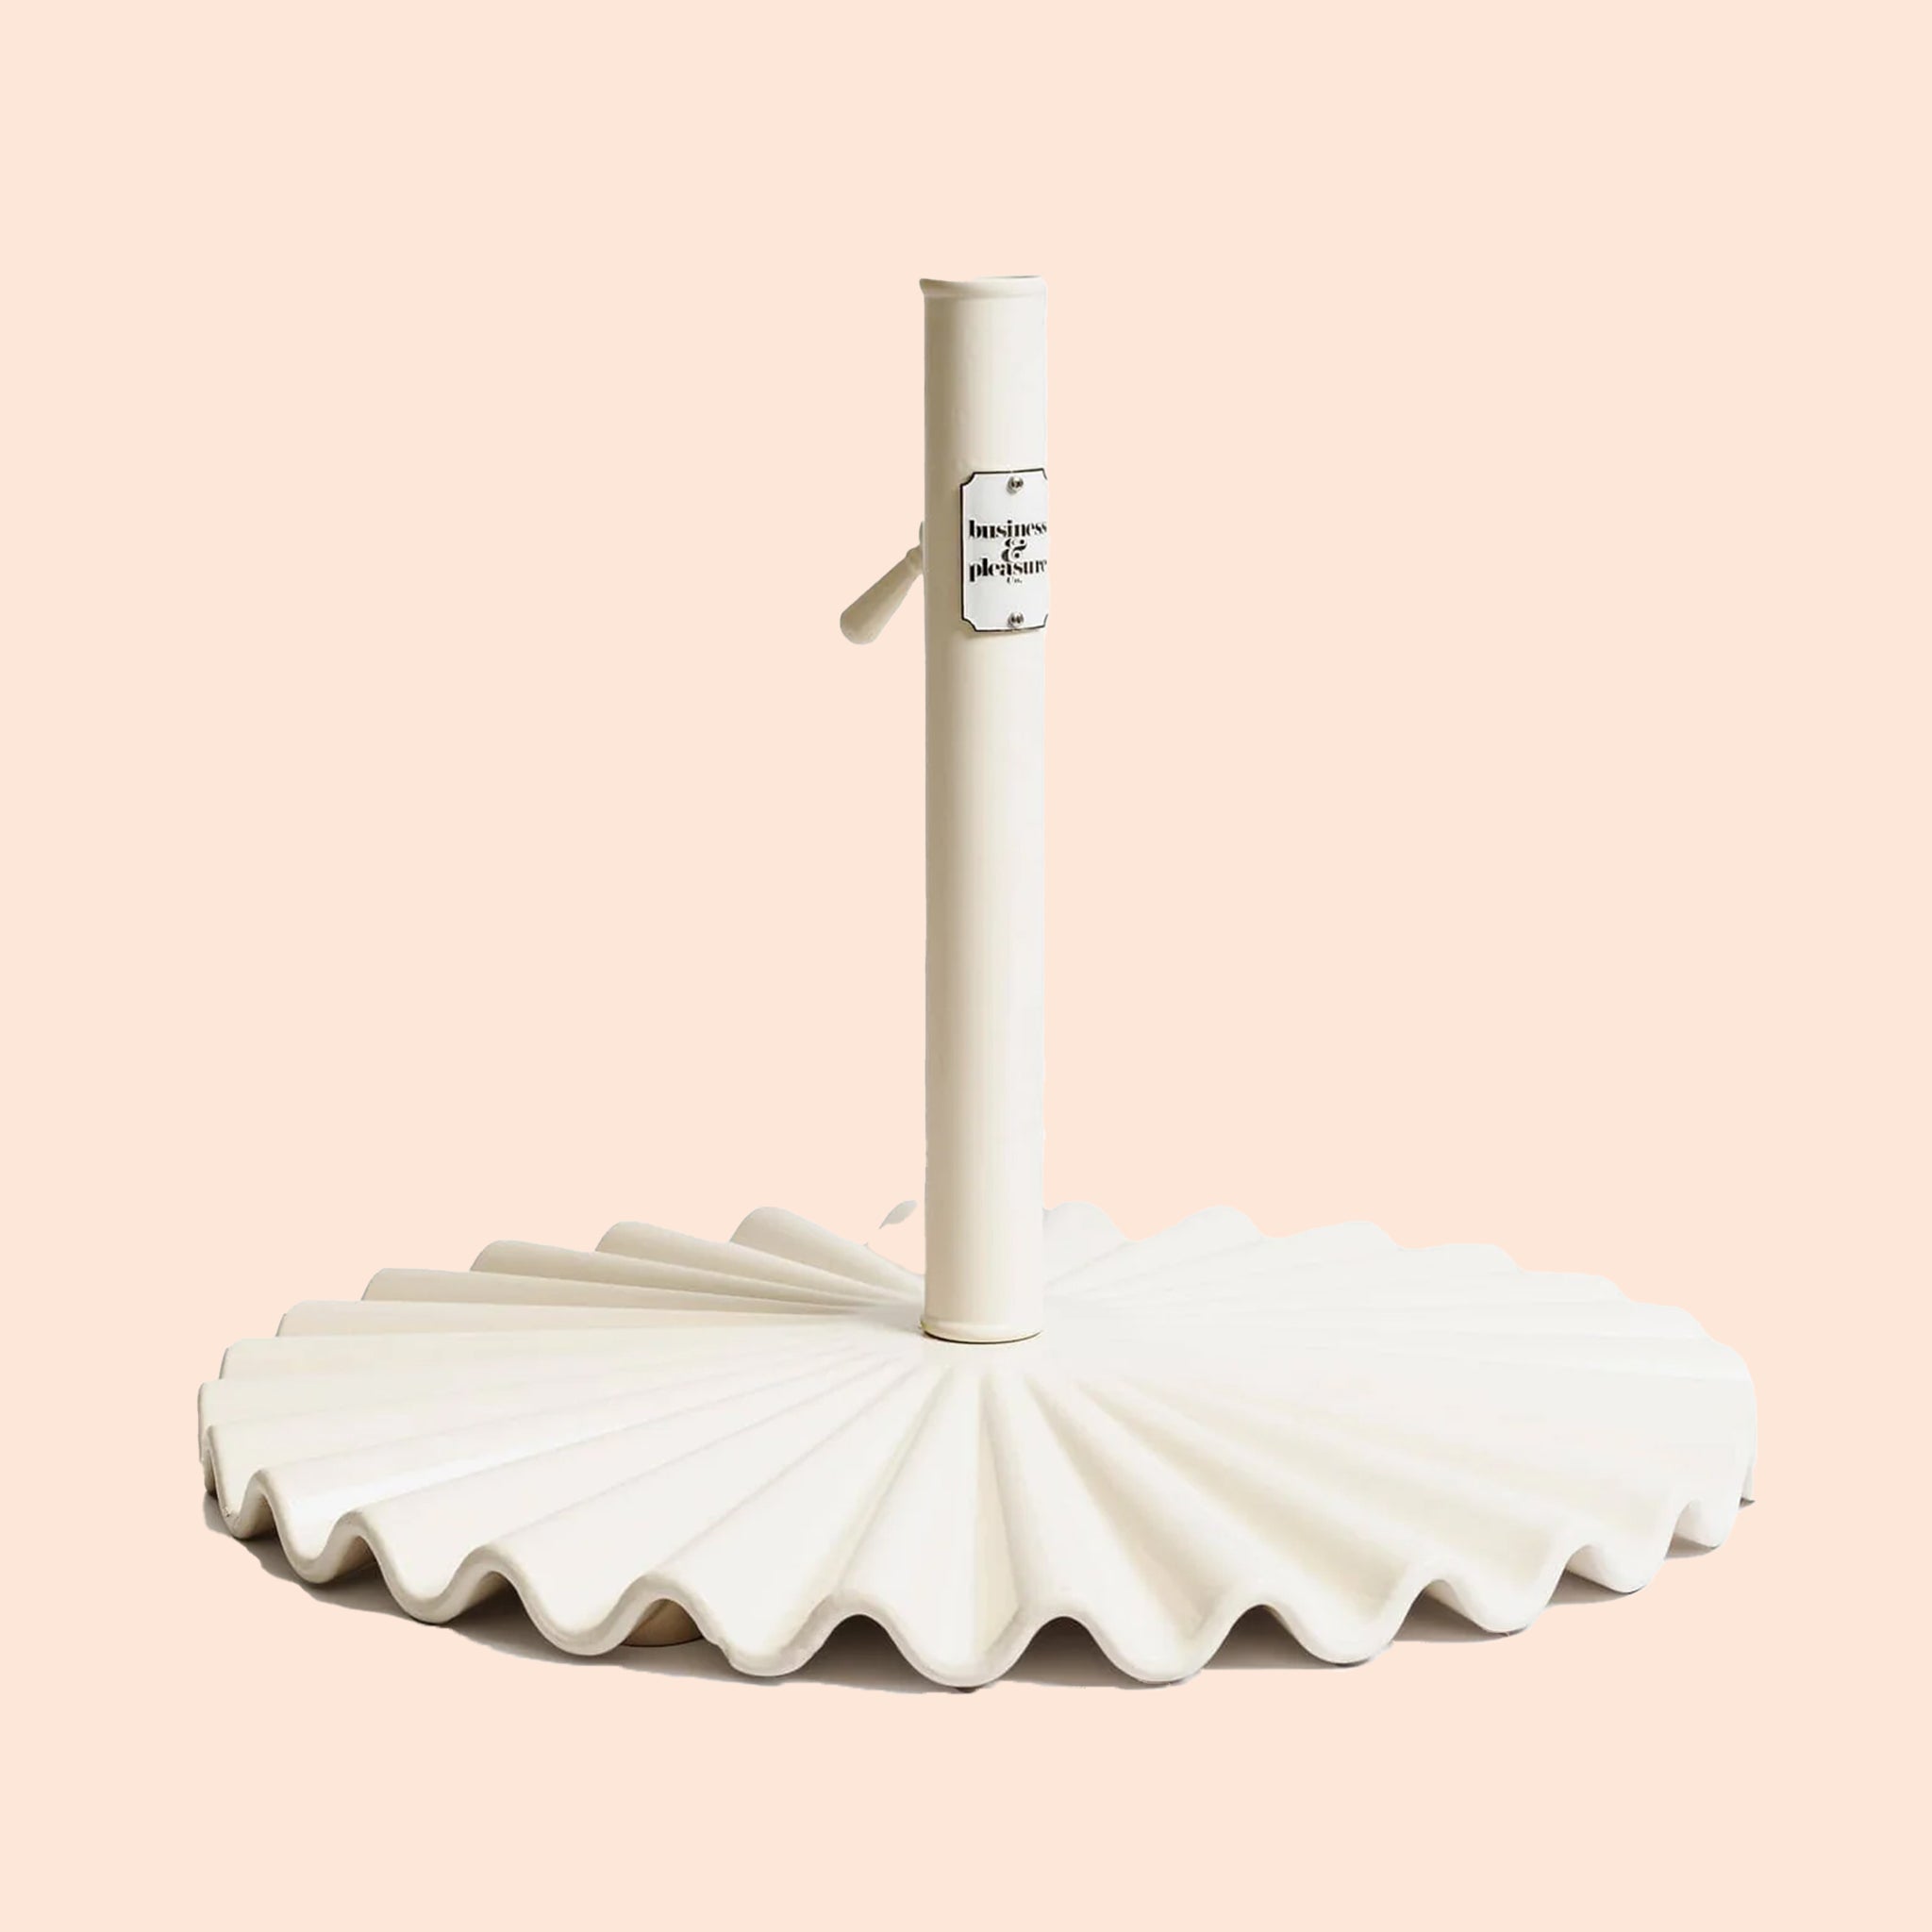 A wavy umbrella base in an antique white color.